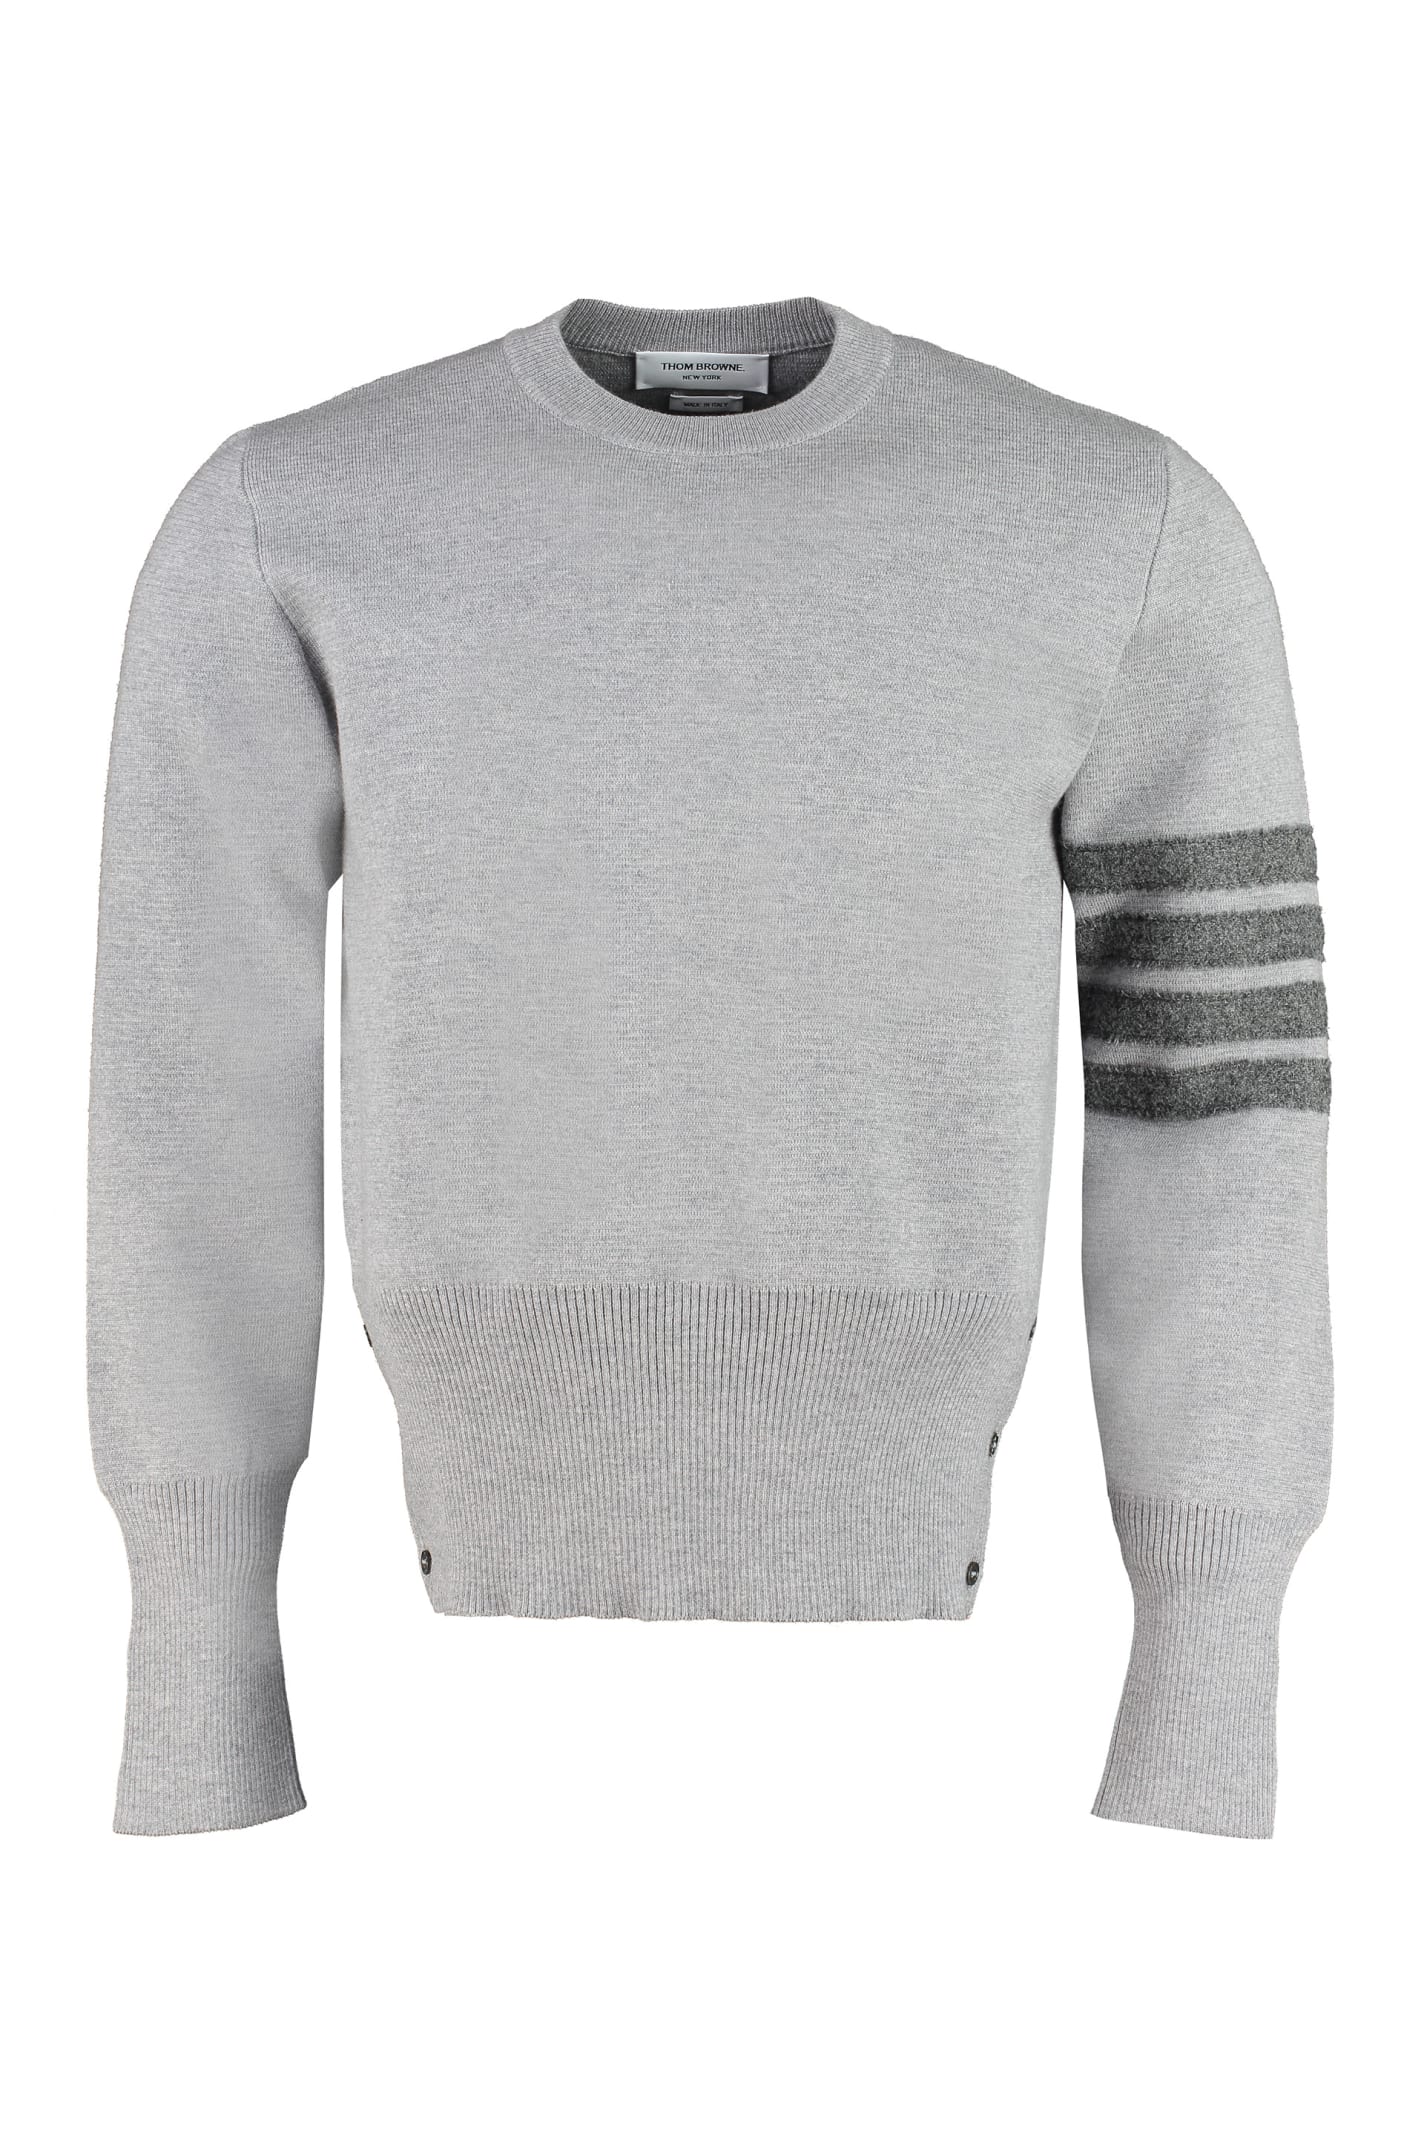 Thom Browne Merino Wool Crew-neck Sweater